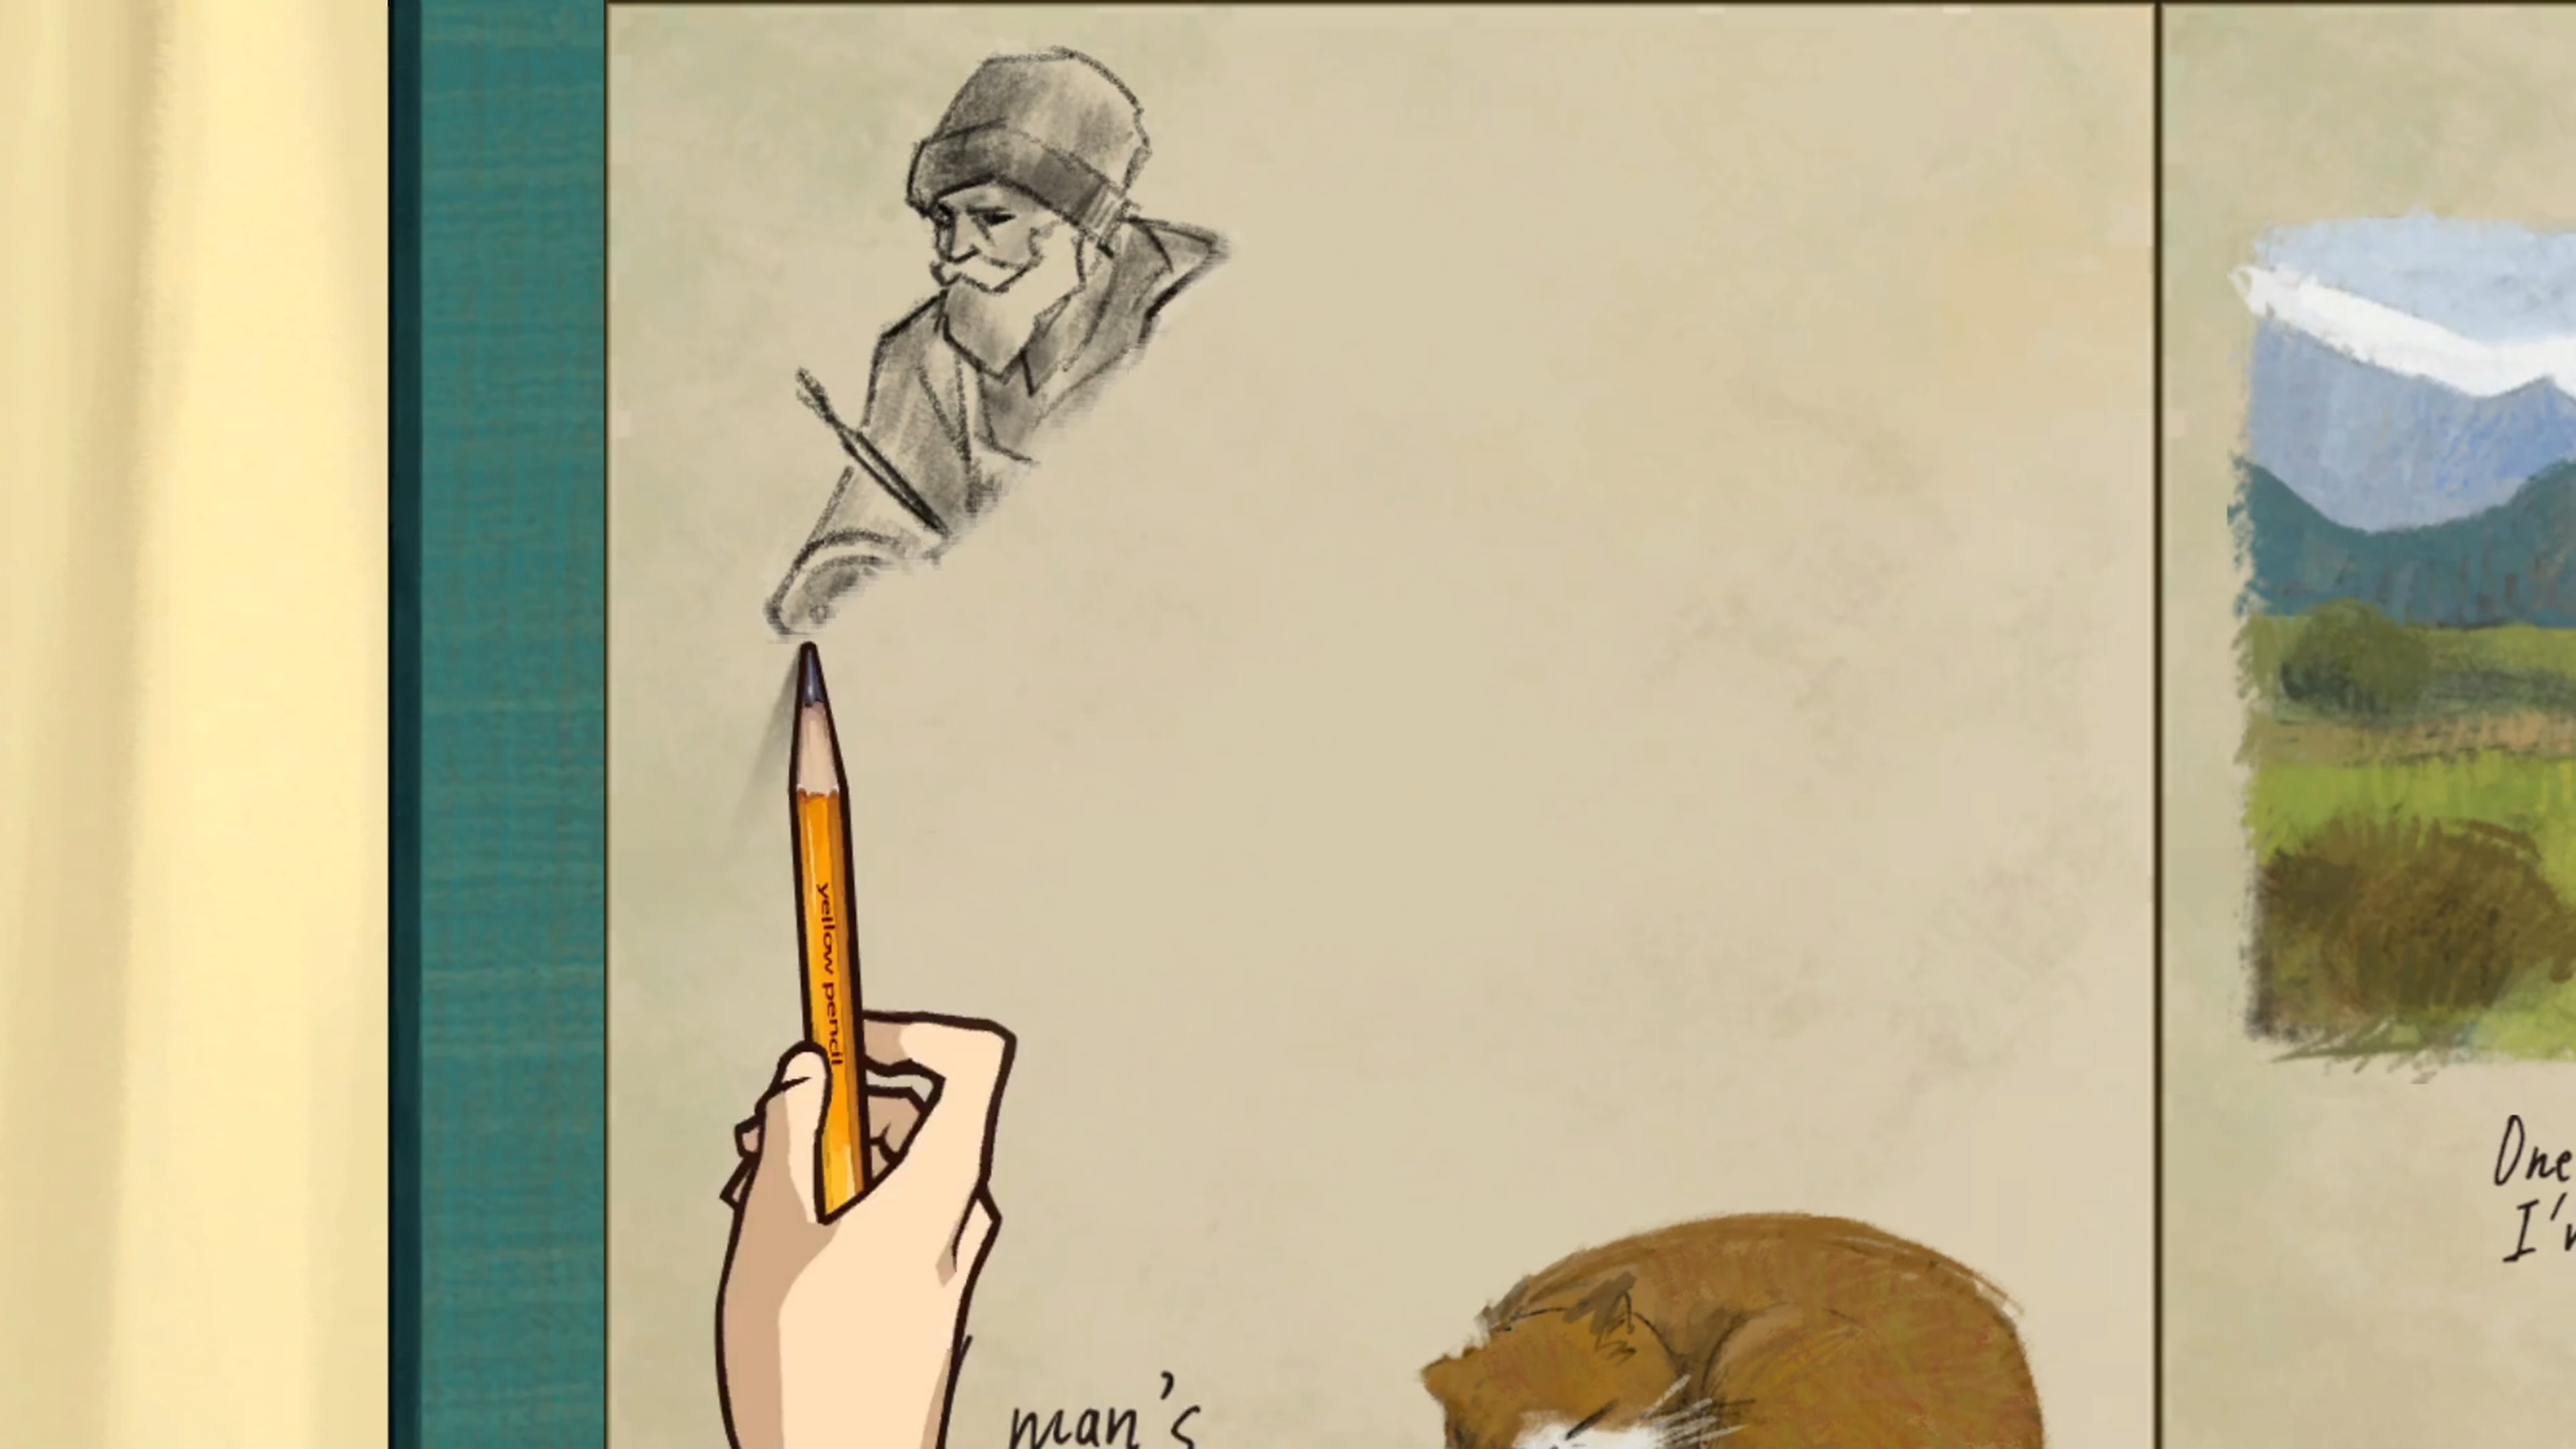 Behind the Frame: The Finest Scenery screenshot waarop een personage tekent met een potlood